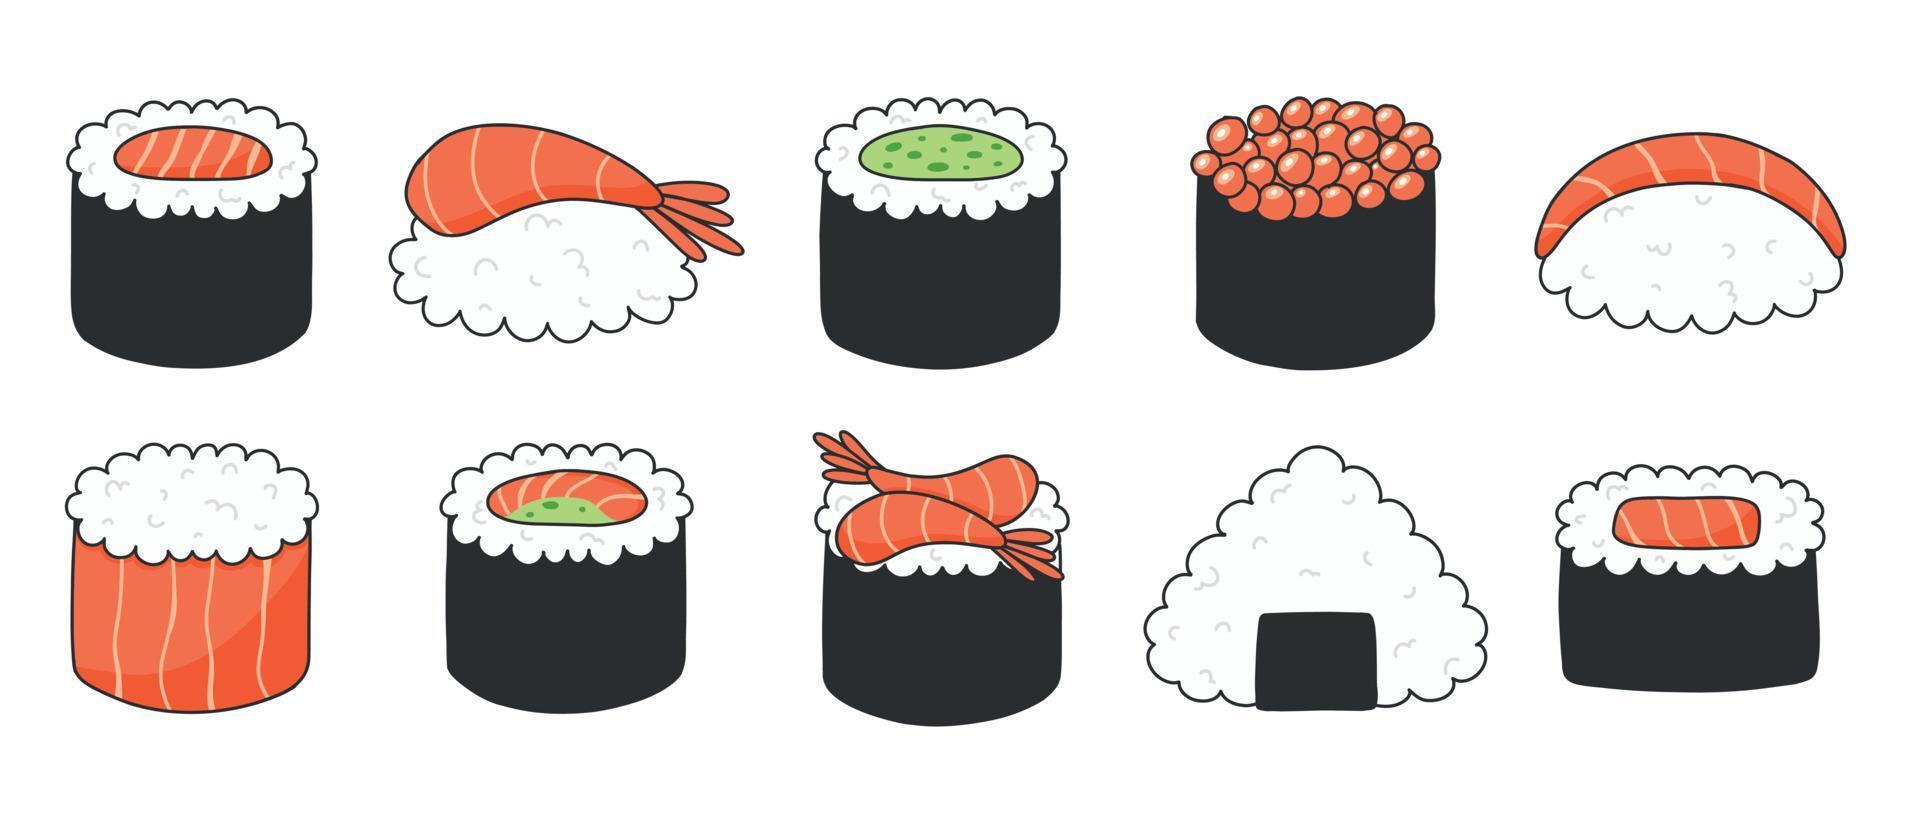 sushi ambientado en estilo kawaii. lindo sushi japonés. ilustración vectorial estilo de dibujos animados logotipo del restaurante de sushi. vector